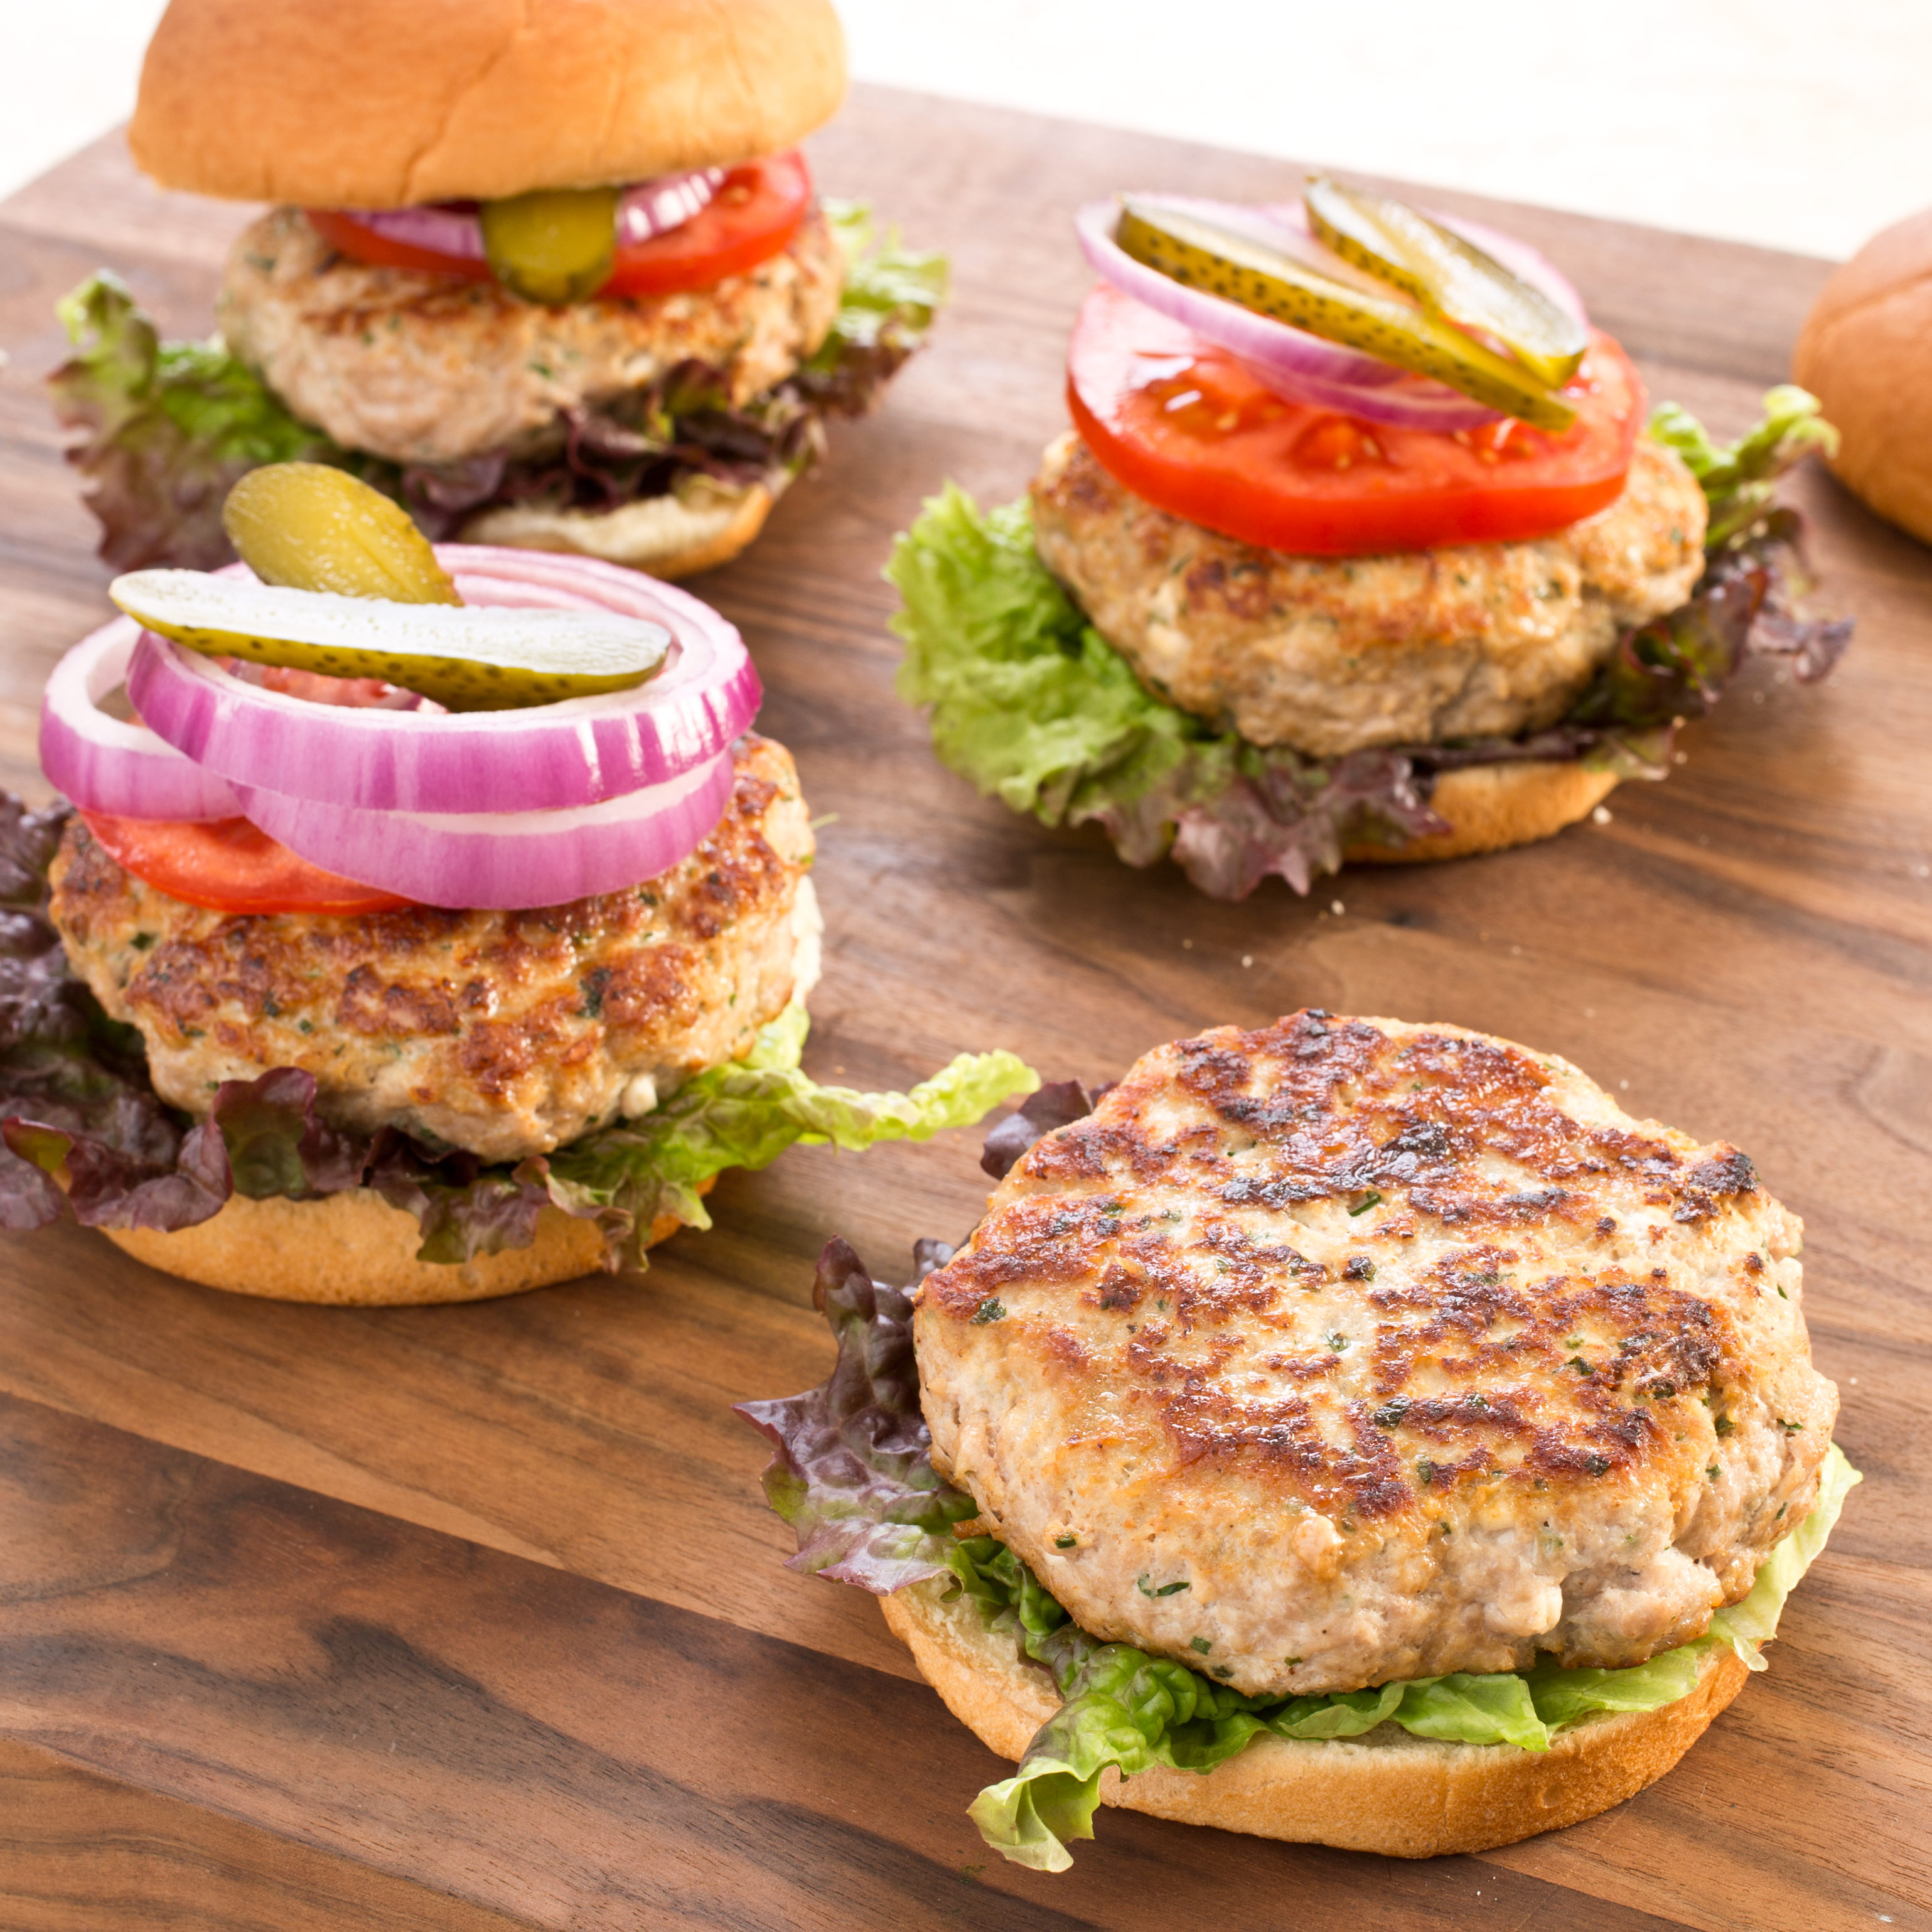 Best Turkey Burger Recipe - Juicy and Flavorful! Kristine's Kitchen